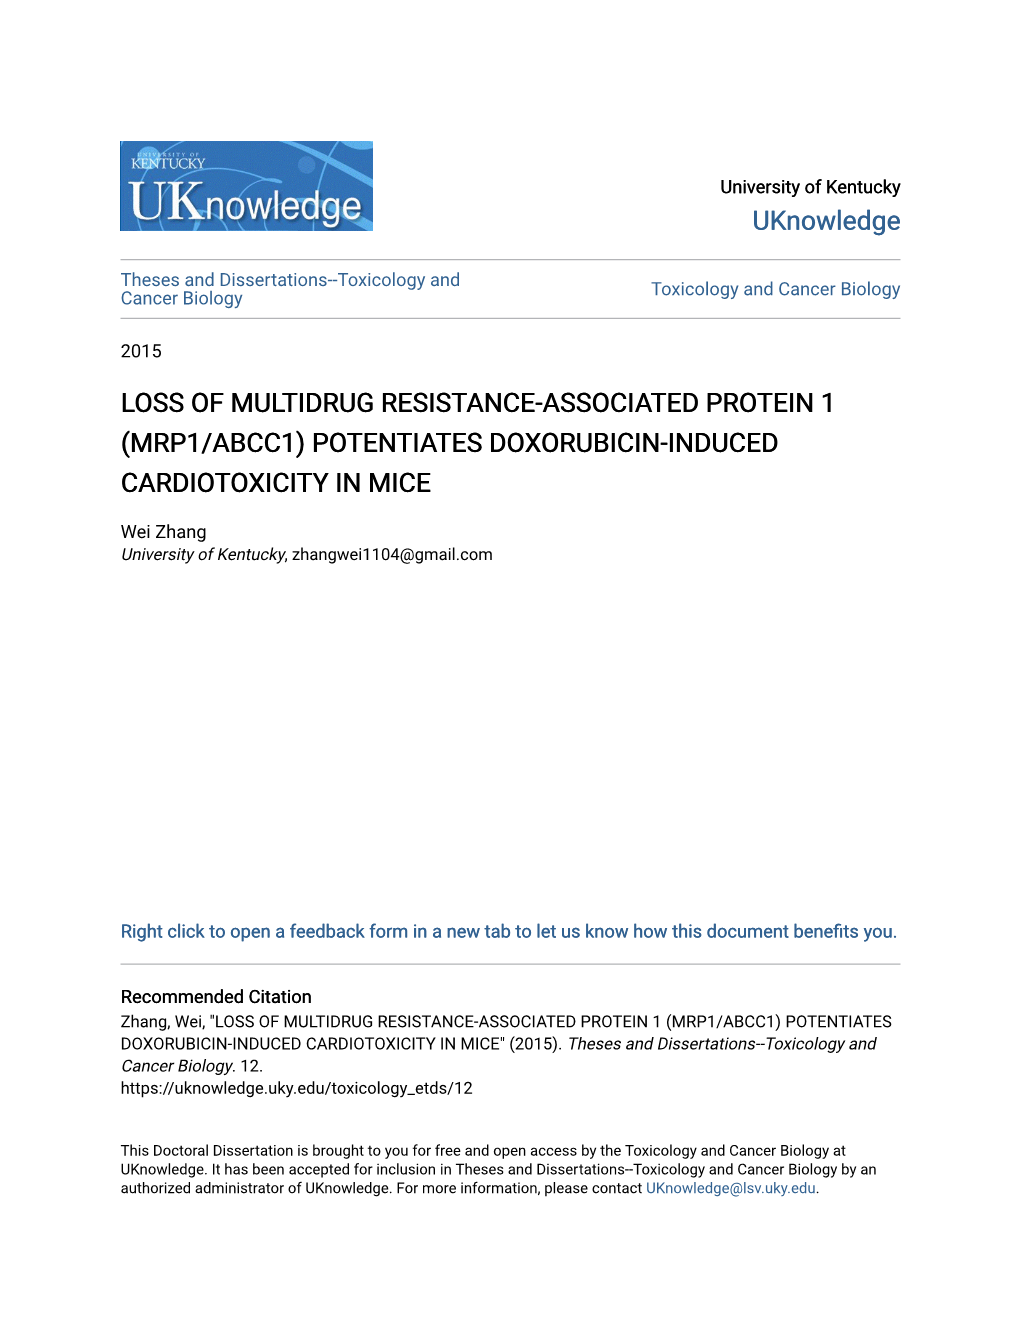 Mrp1/Abcc1) Potentiates Doxorubicin-Induced Cardiotoxicity in Mice